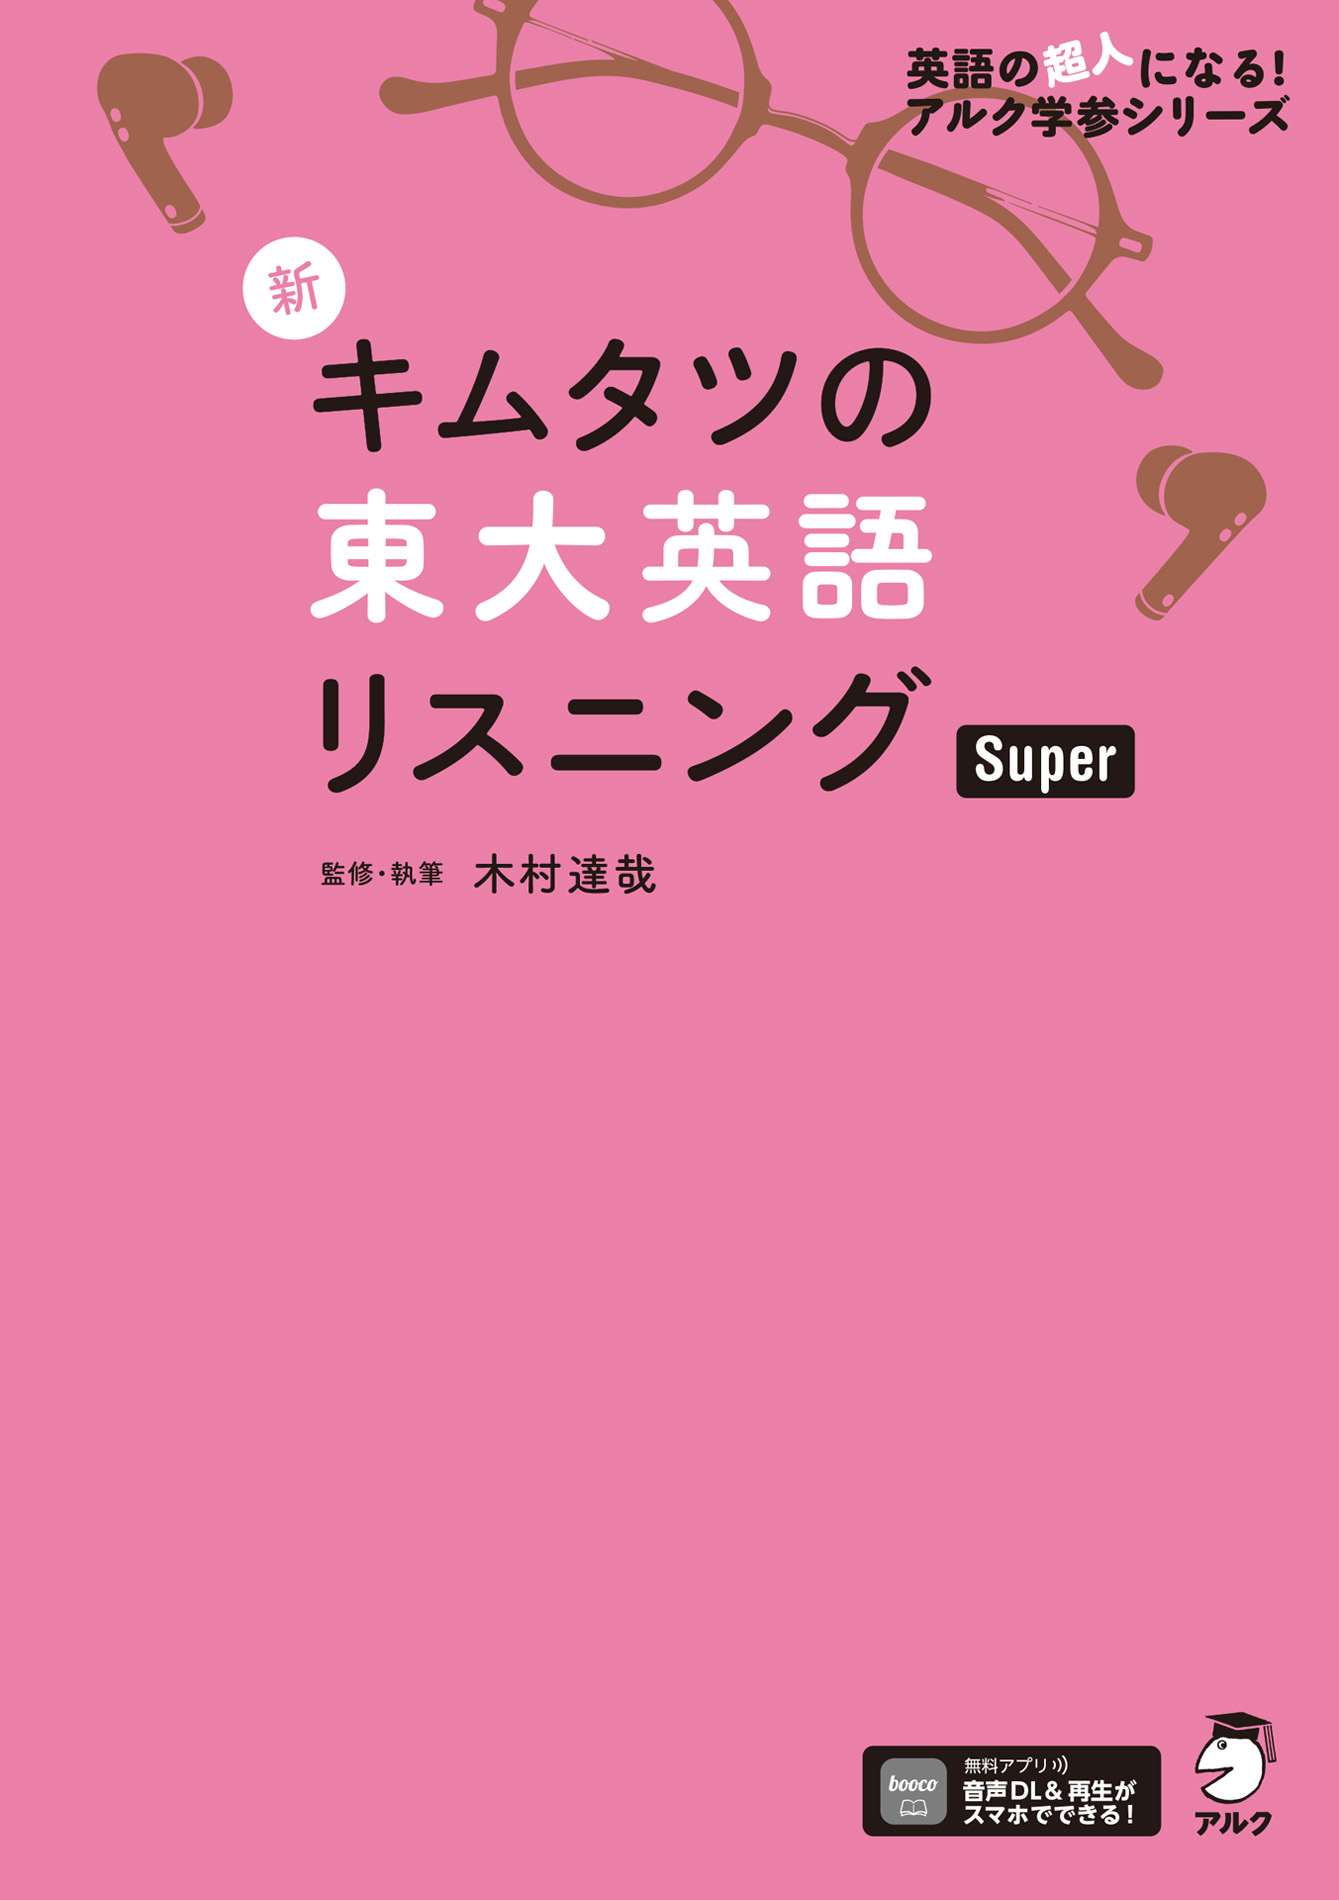 音声DL付]新 キムタツの東大英語リスニング Super(書籍) - 電子書籍